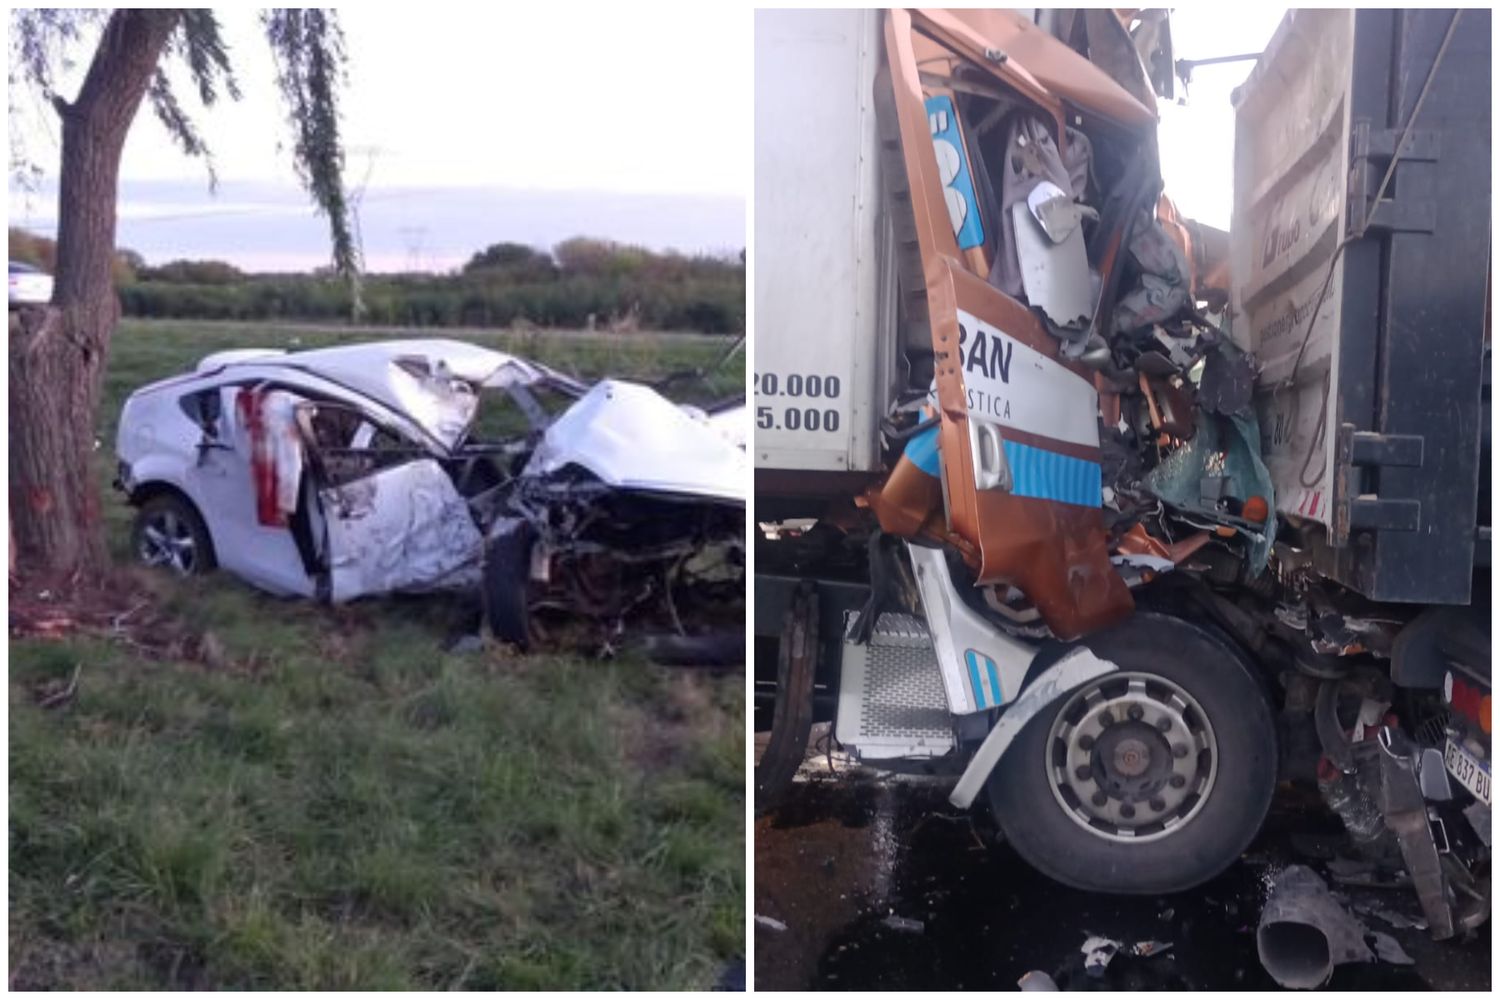 Mañana trágica en Ruta 9: Una automovilista murió y un camionero quedó atrapado en dos choques a la altura de Zárate